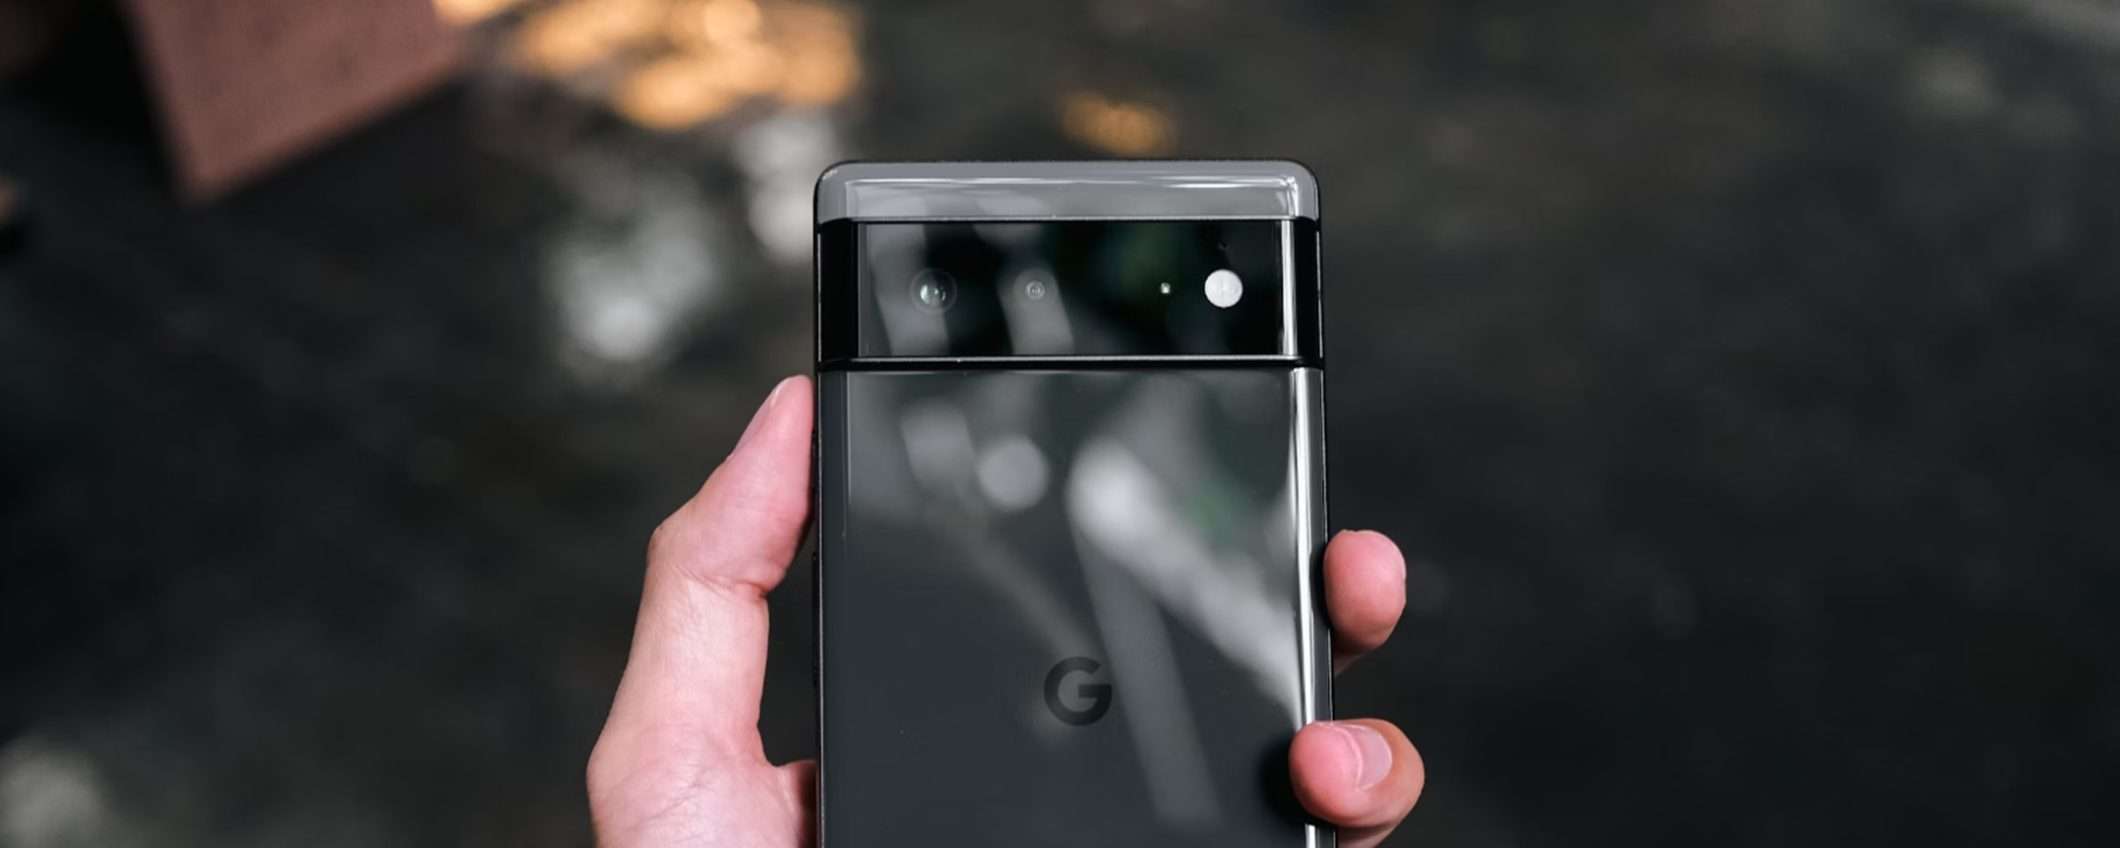 Google Pixel: popolarità non significa ancora fedeltà